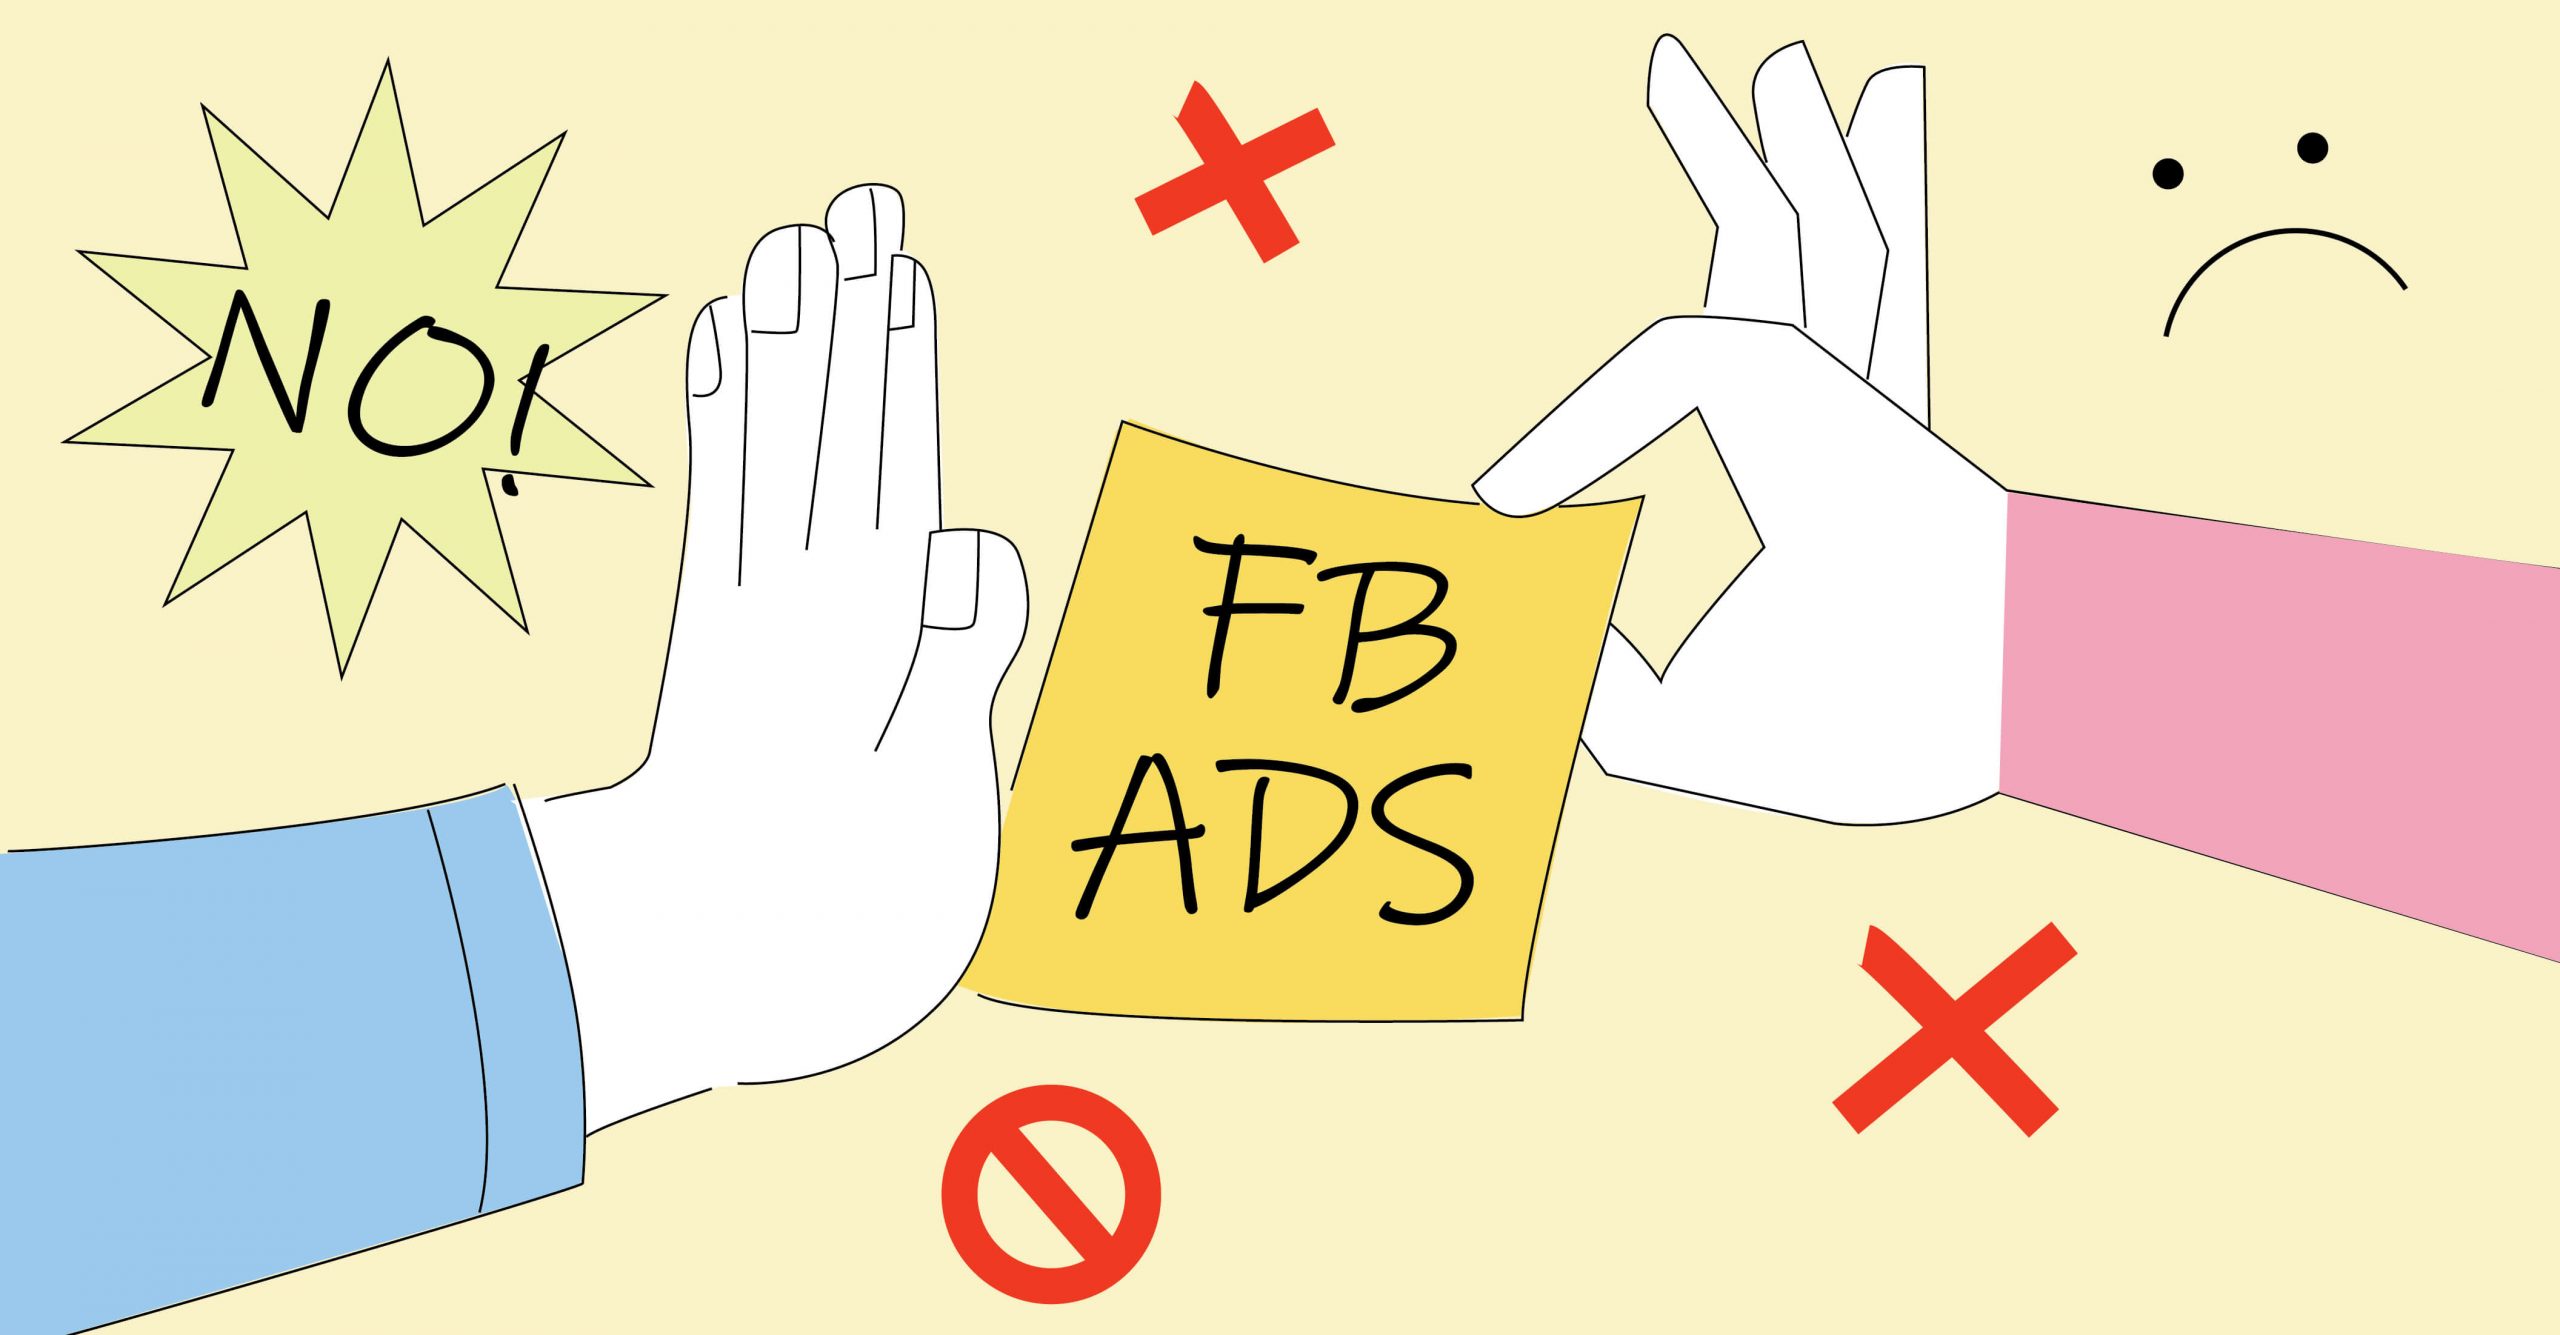 Facebook xét duyệt quảng cáo dựa vào những tiêu chí nào?